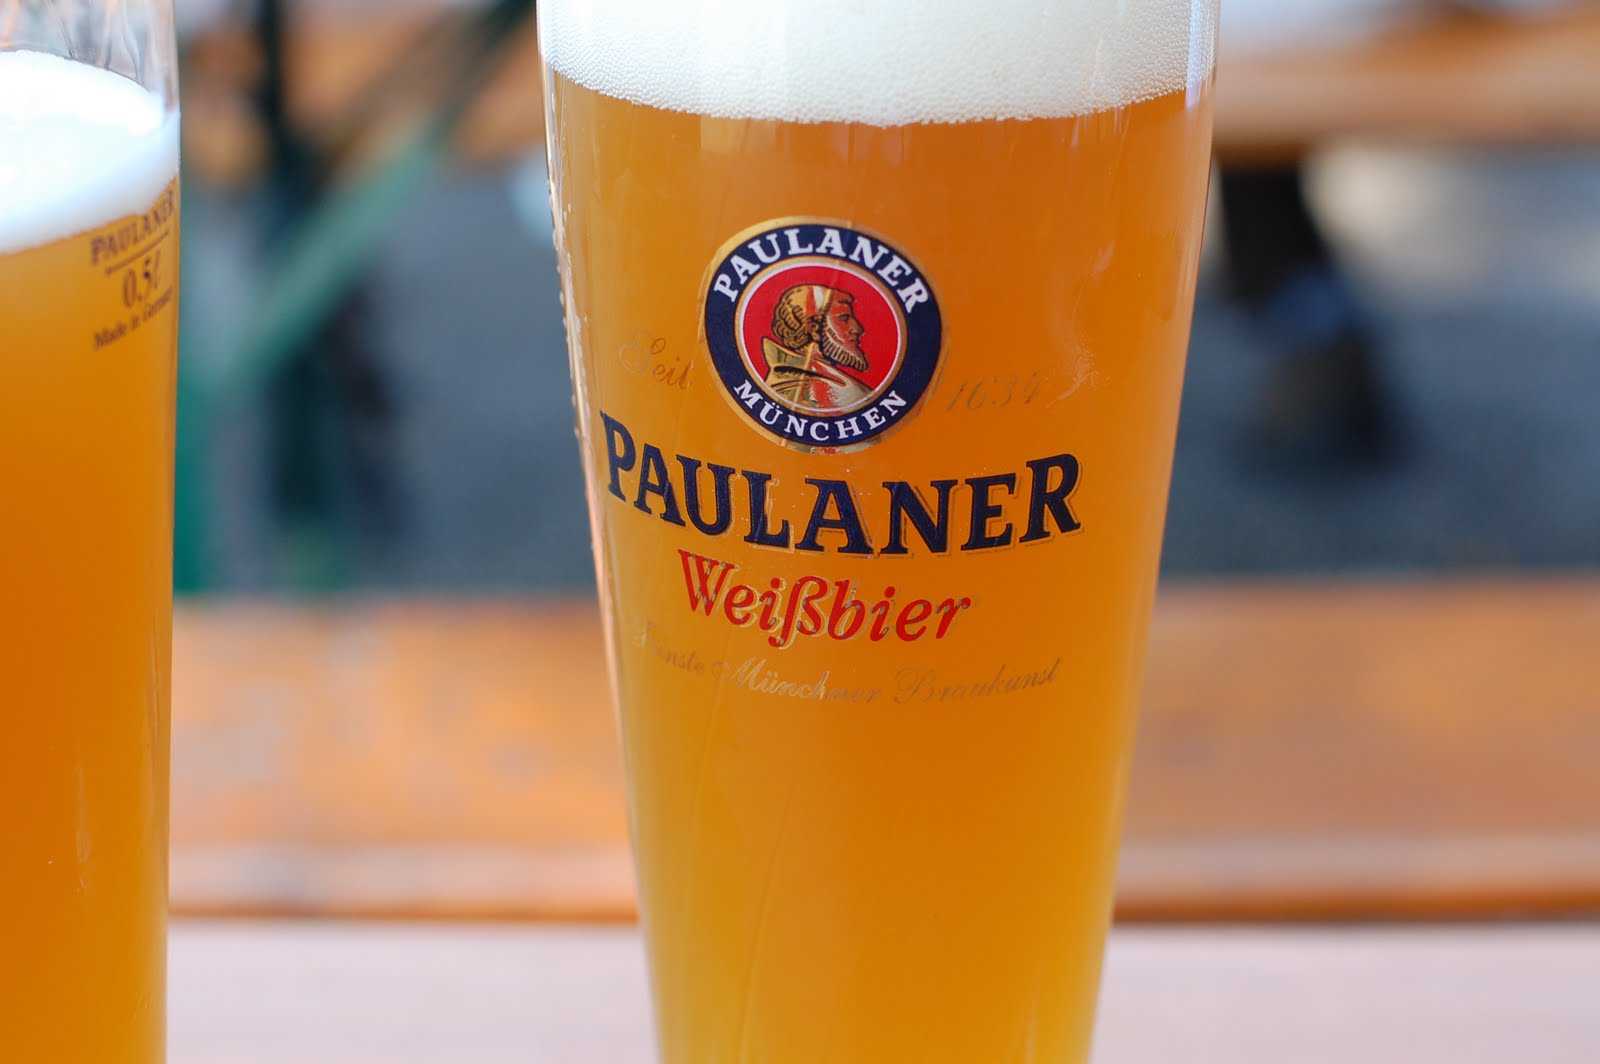 Пиво "пауланер" (paulaner) - настоящее немецкое качество